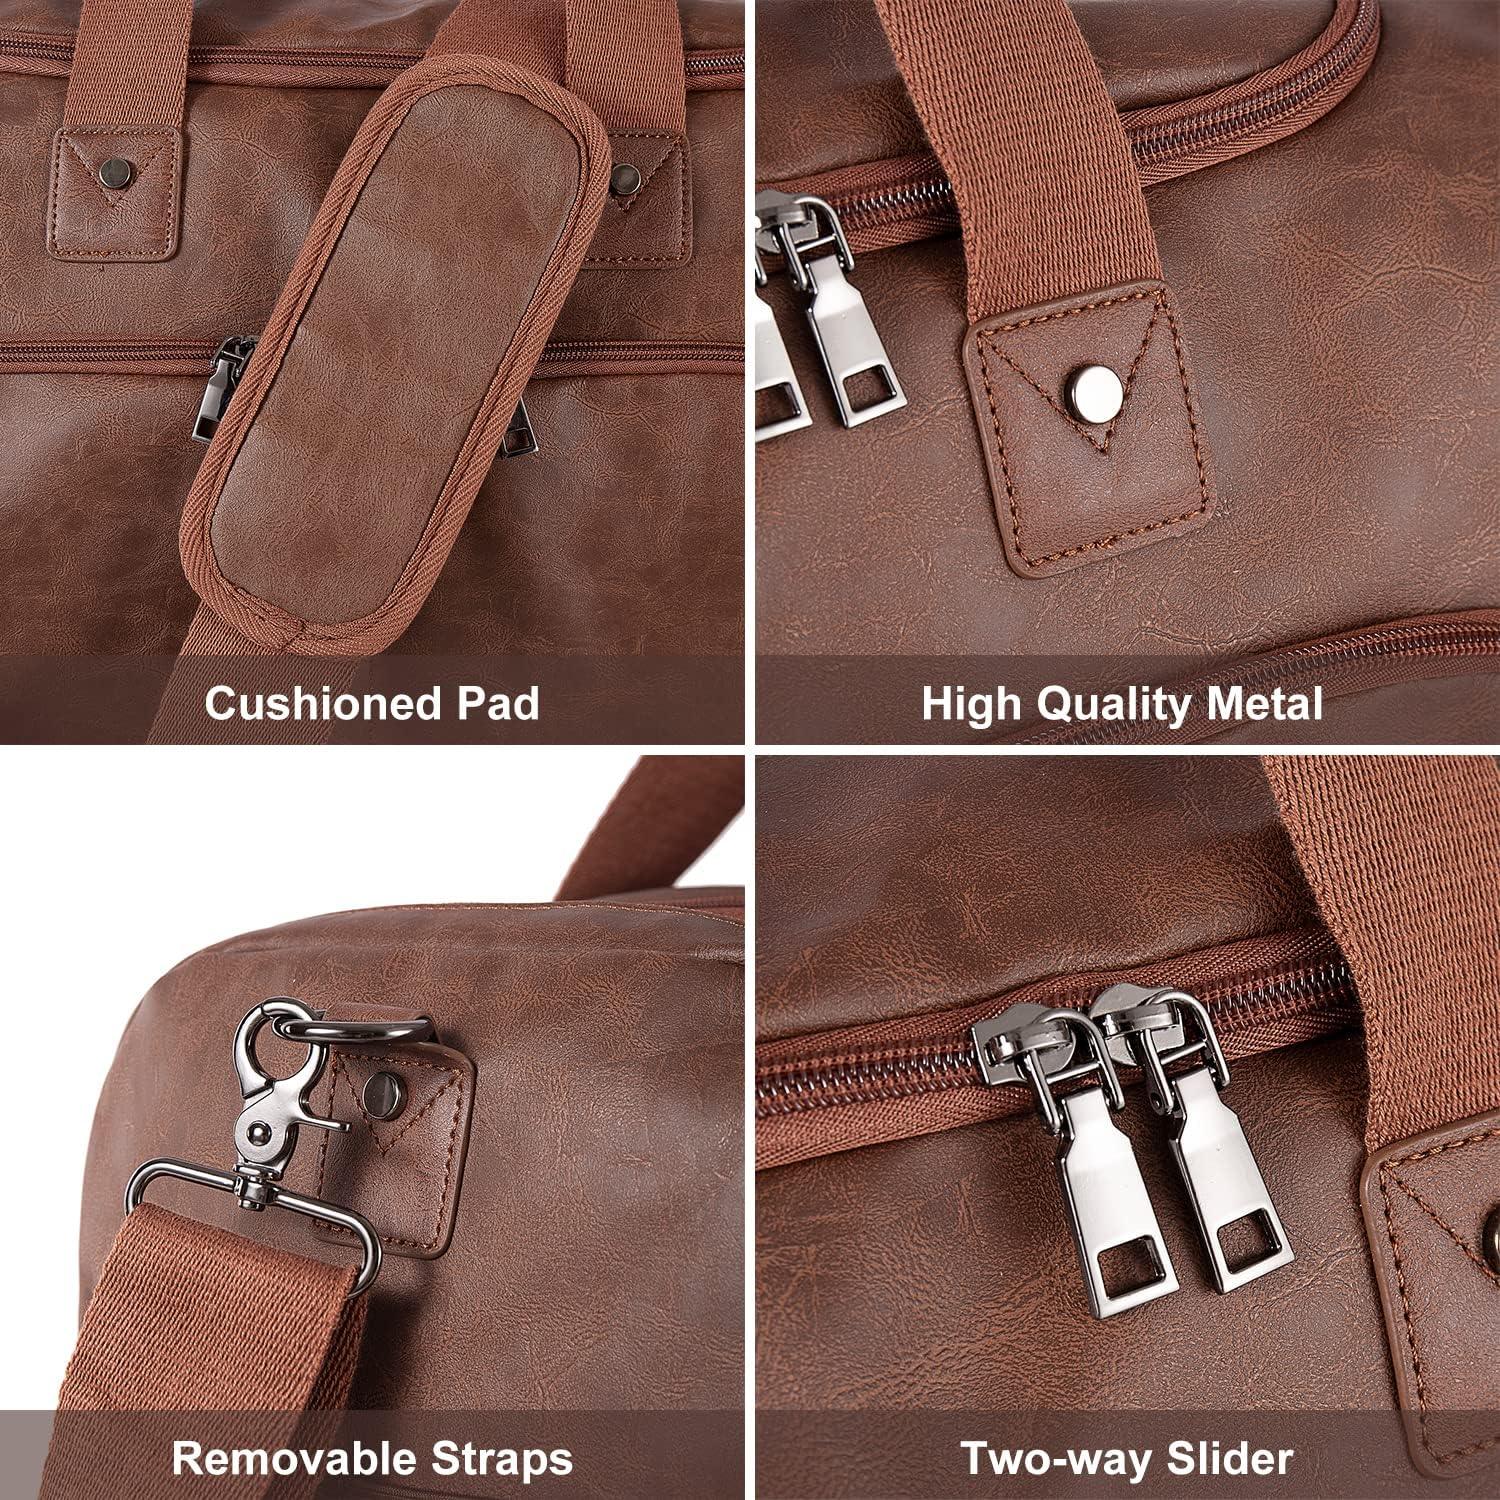 FR Fashion Co. 22" Leather Multi-Functional Weekender Duffel Bag - FR Fashion Co. 